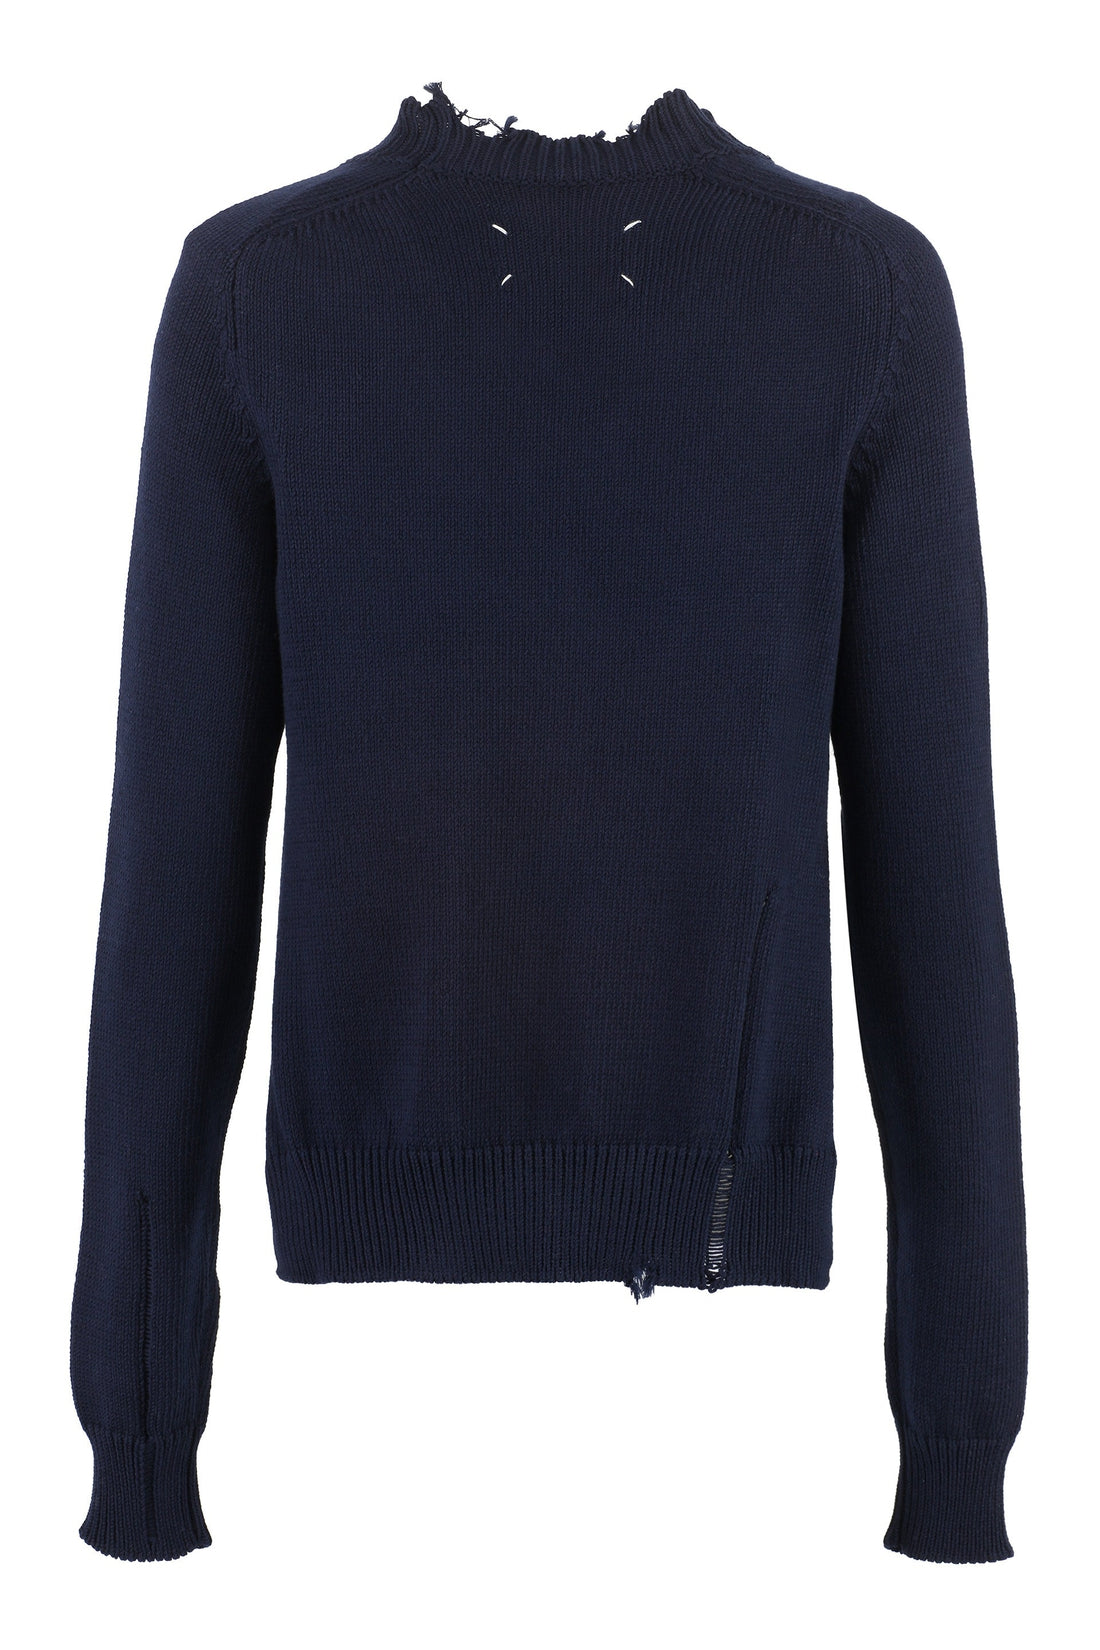 Maison Margiela-OUTLET-SALE-Cotton crew-neck sweater-ARCHIVIST